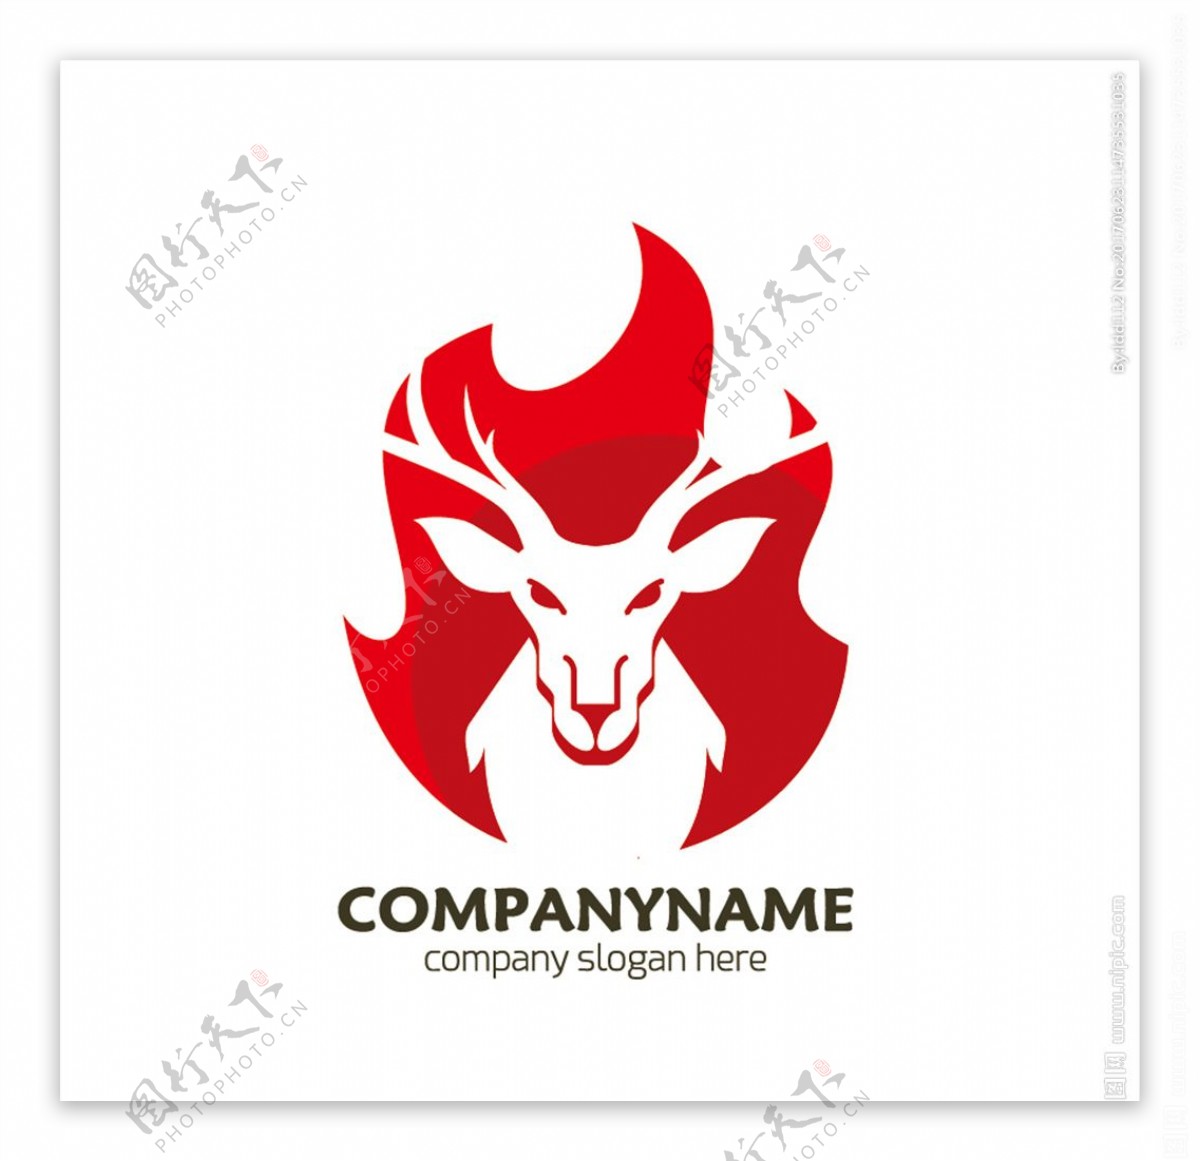 红色抽象羚羊logo矢量素材